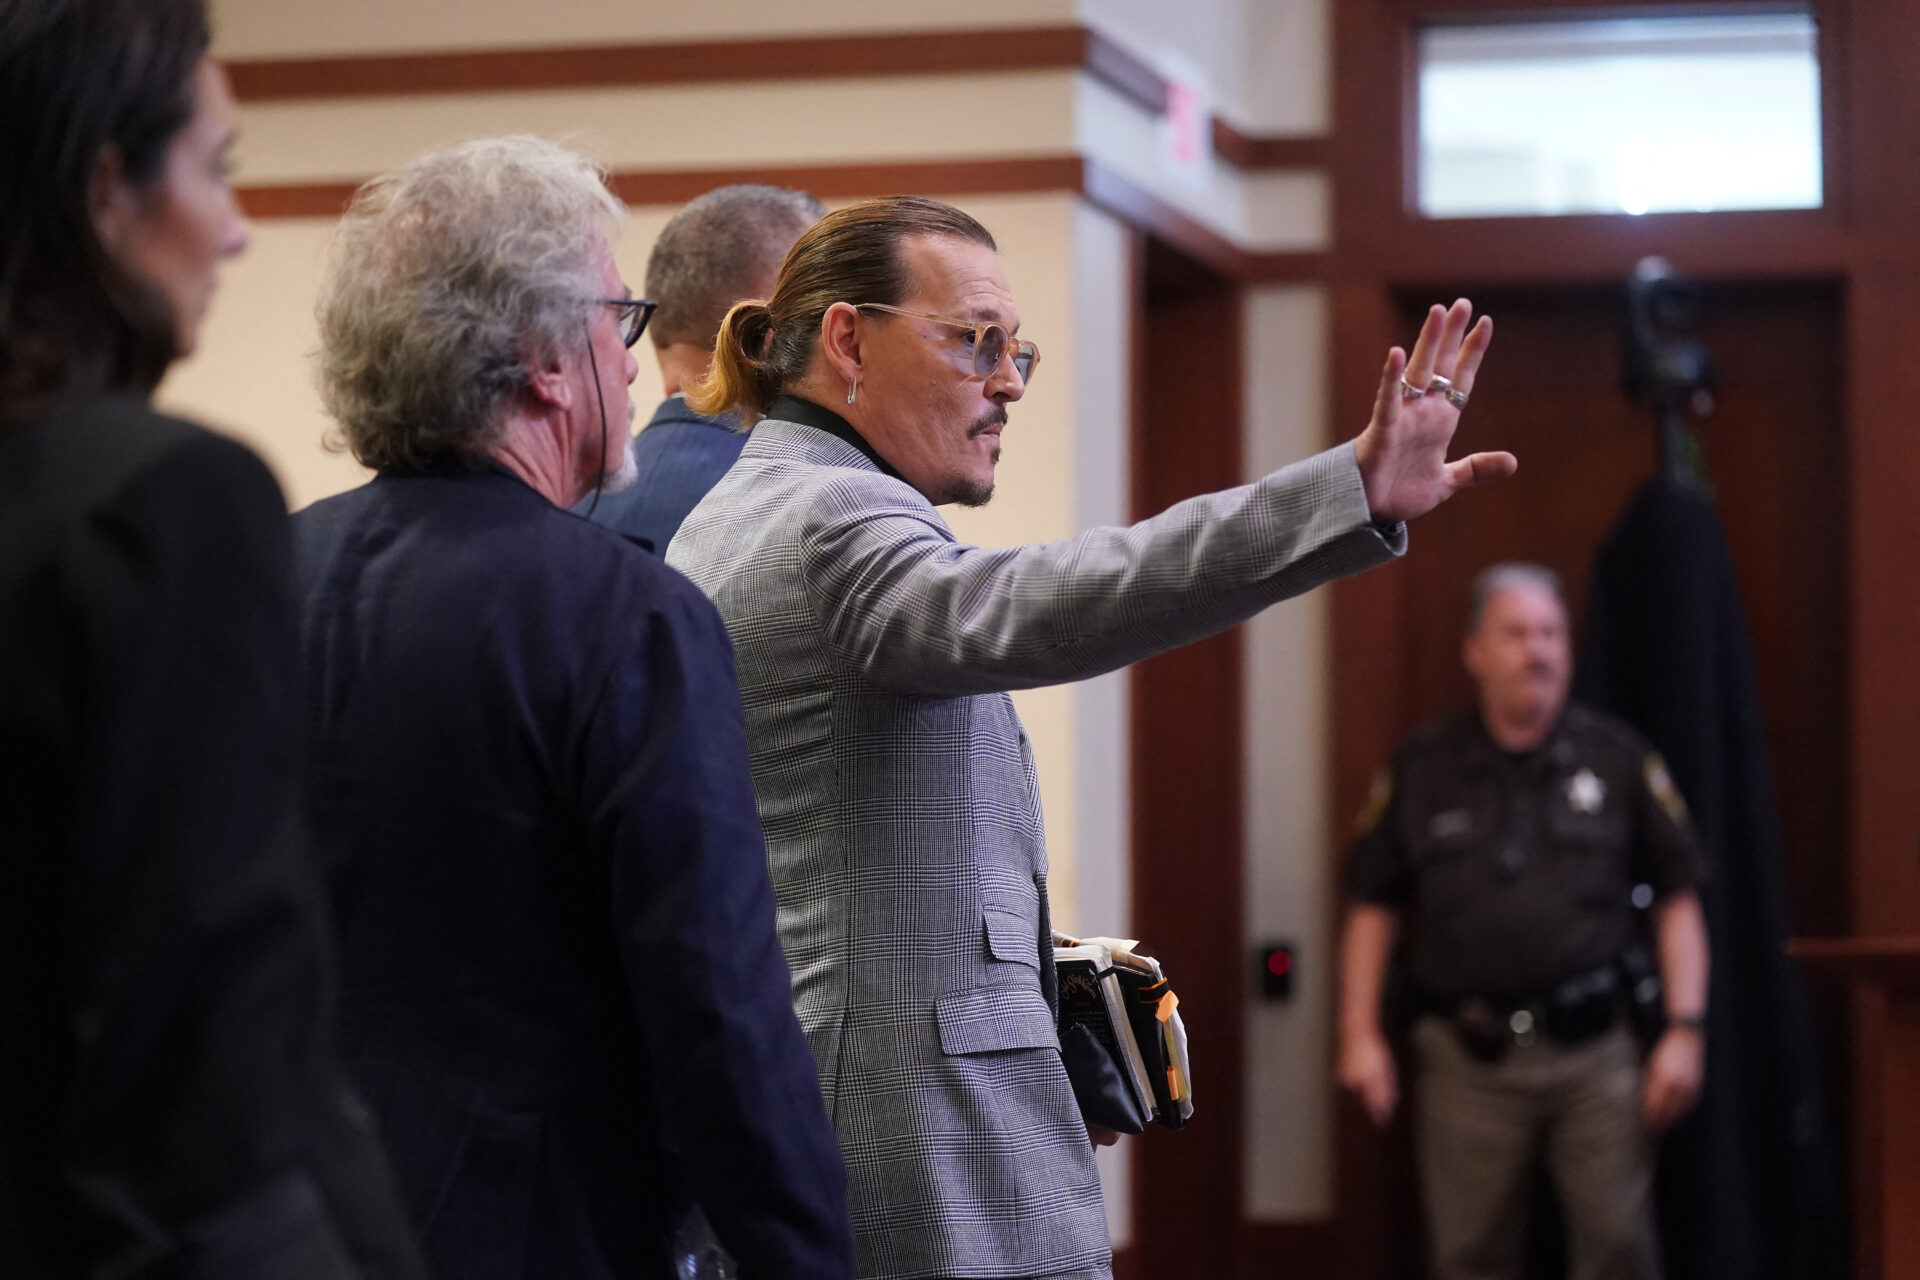 La carrera de Johnny Depp colapsó por su mal comportamiento: agente